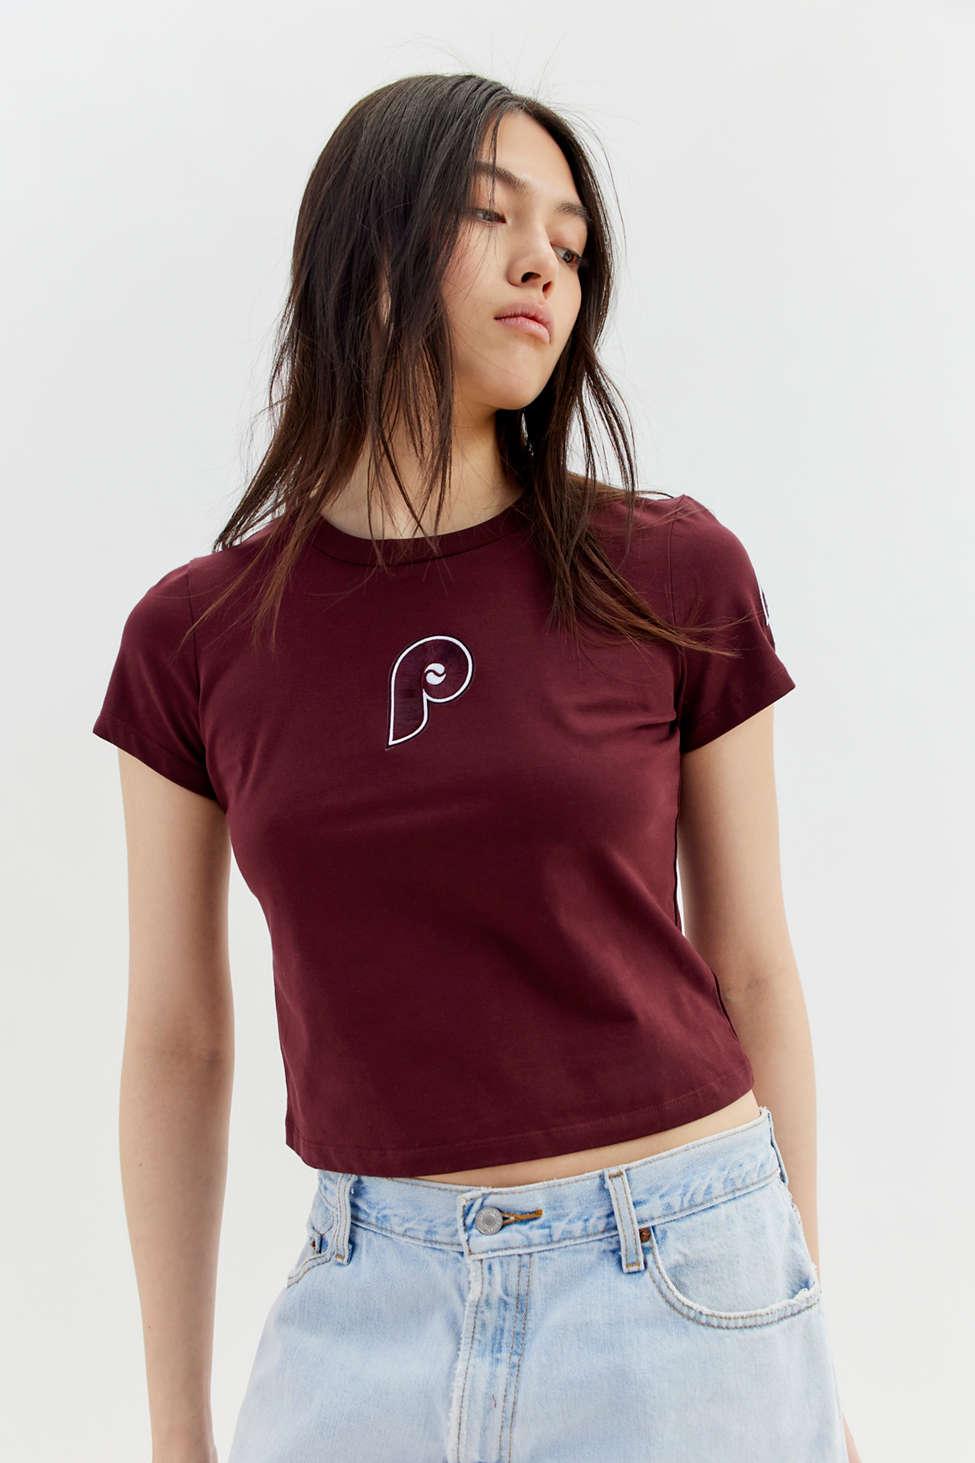 women phillies tee shirts